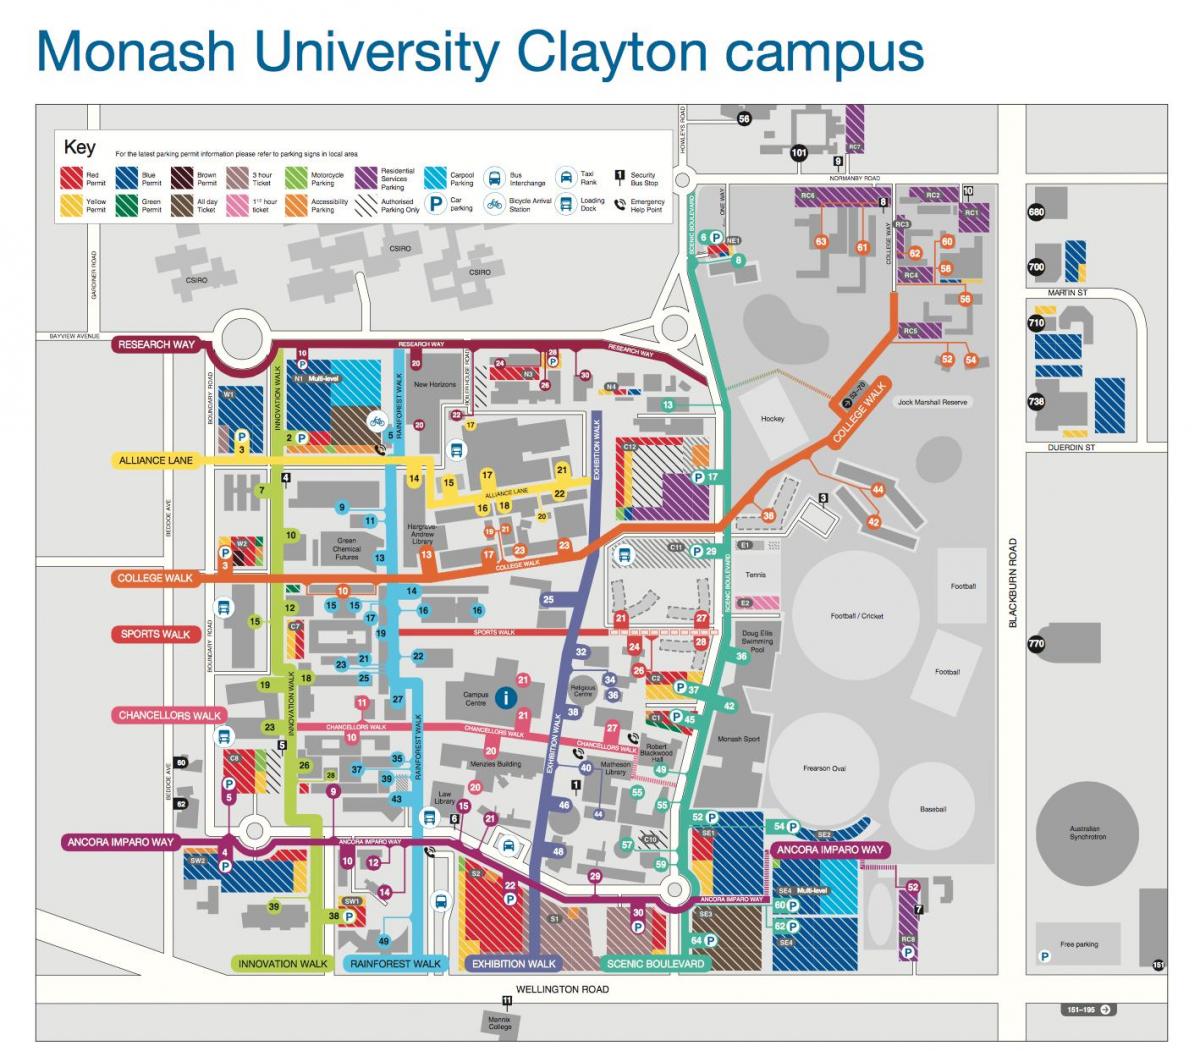 جامعة موناش كلايتون خريطة